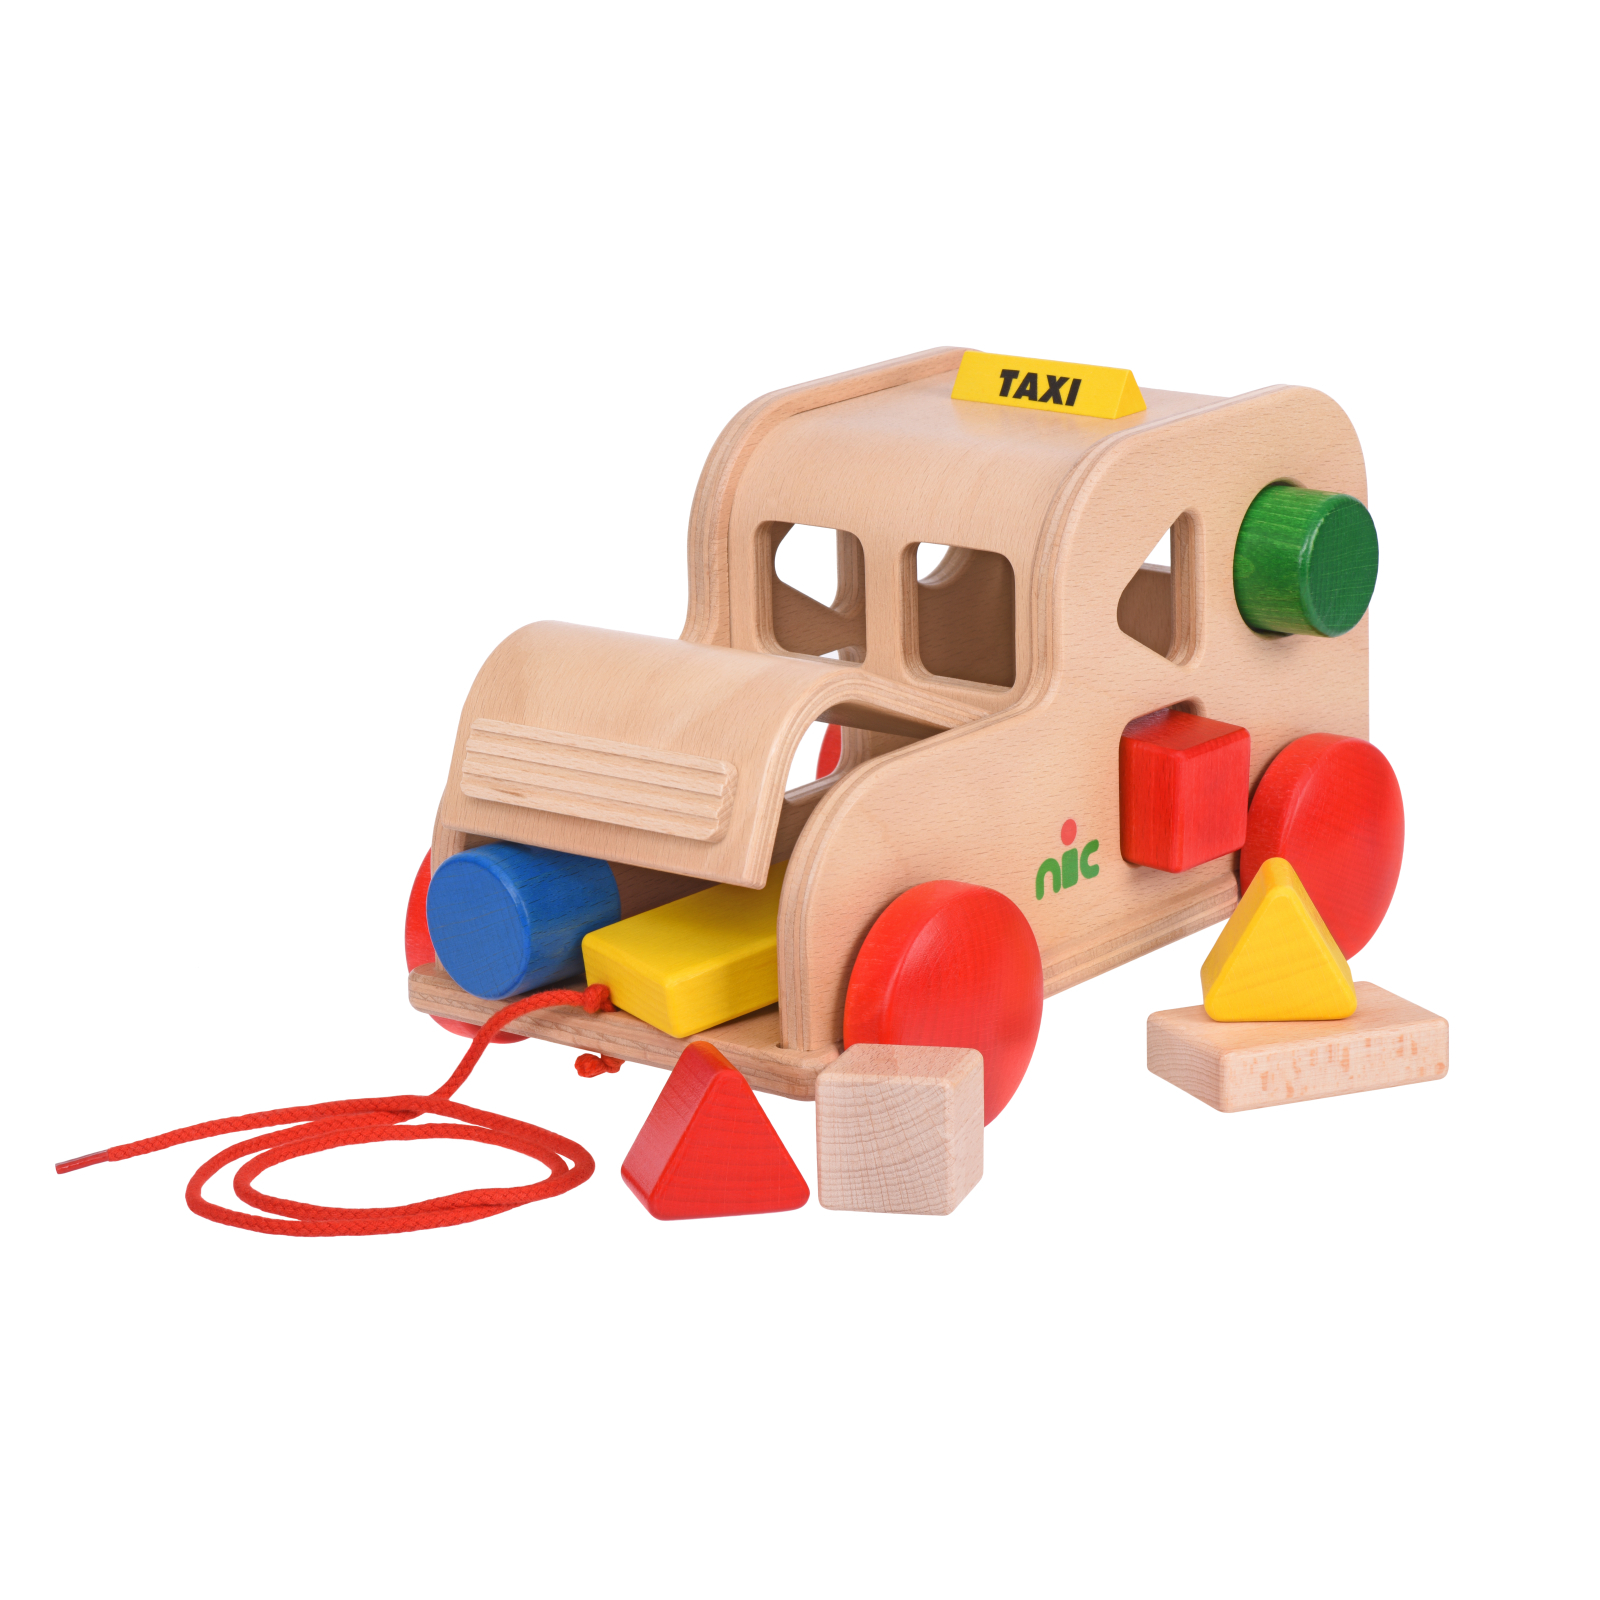 Развивающая игрушка Nic cортер деревянный Такси (NIC1550)